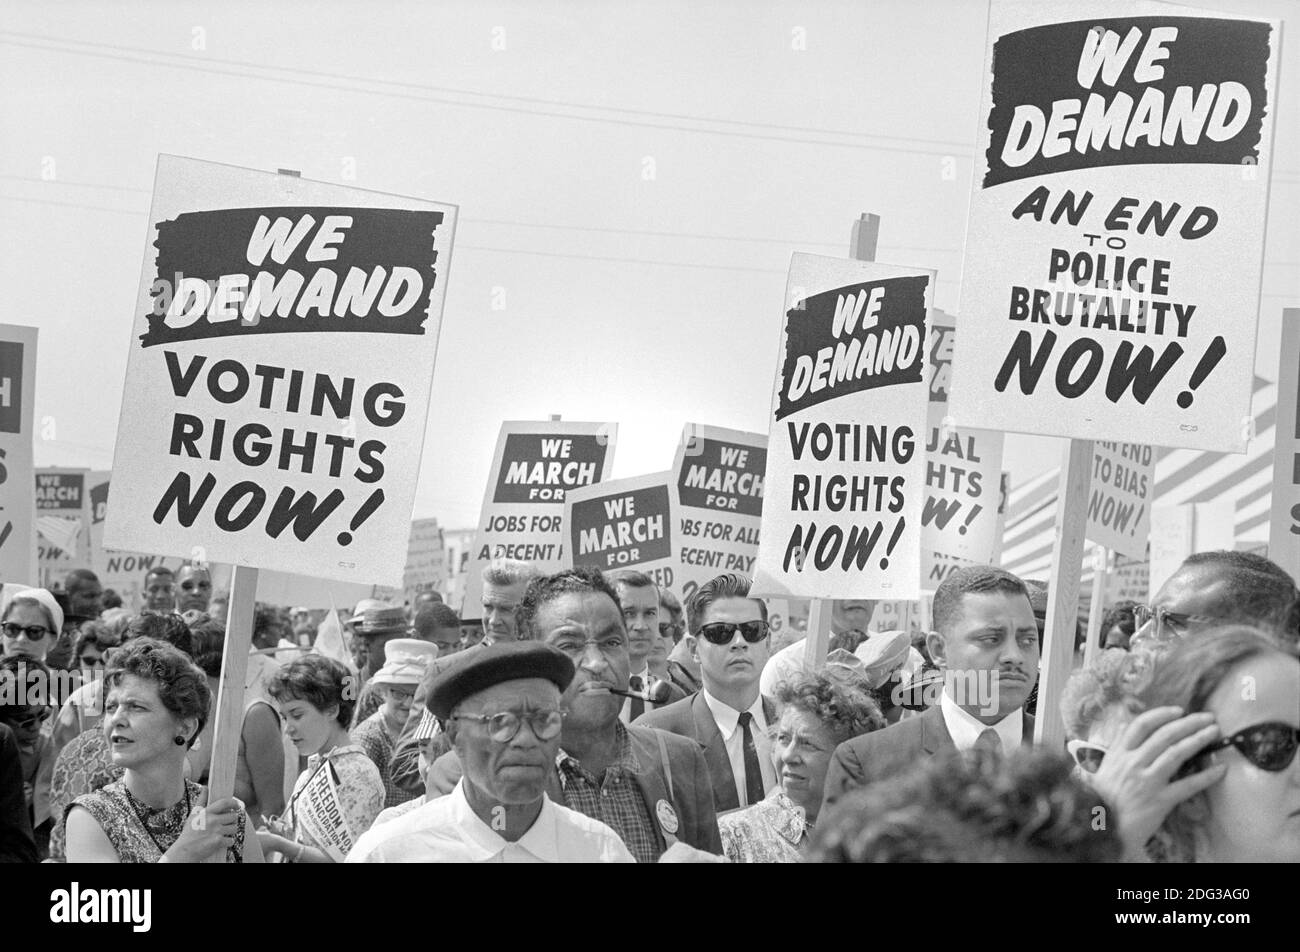 Protestierende mit Schildern auf dem Marsch auf Washington für Arbeitsplätze und Freiheit, Washington, D.C., USA, Foto von Marion S. Trikosko, 28. August 1963 Stockfoto